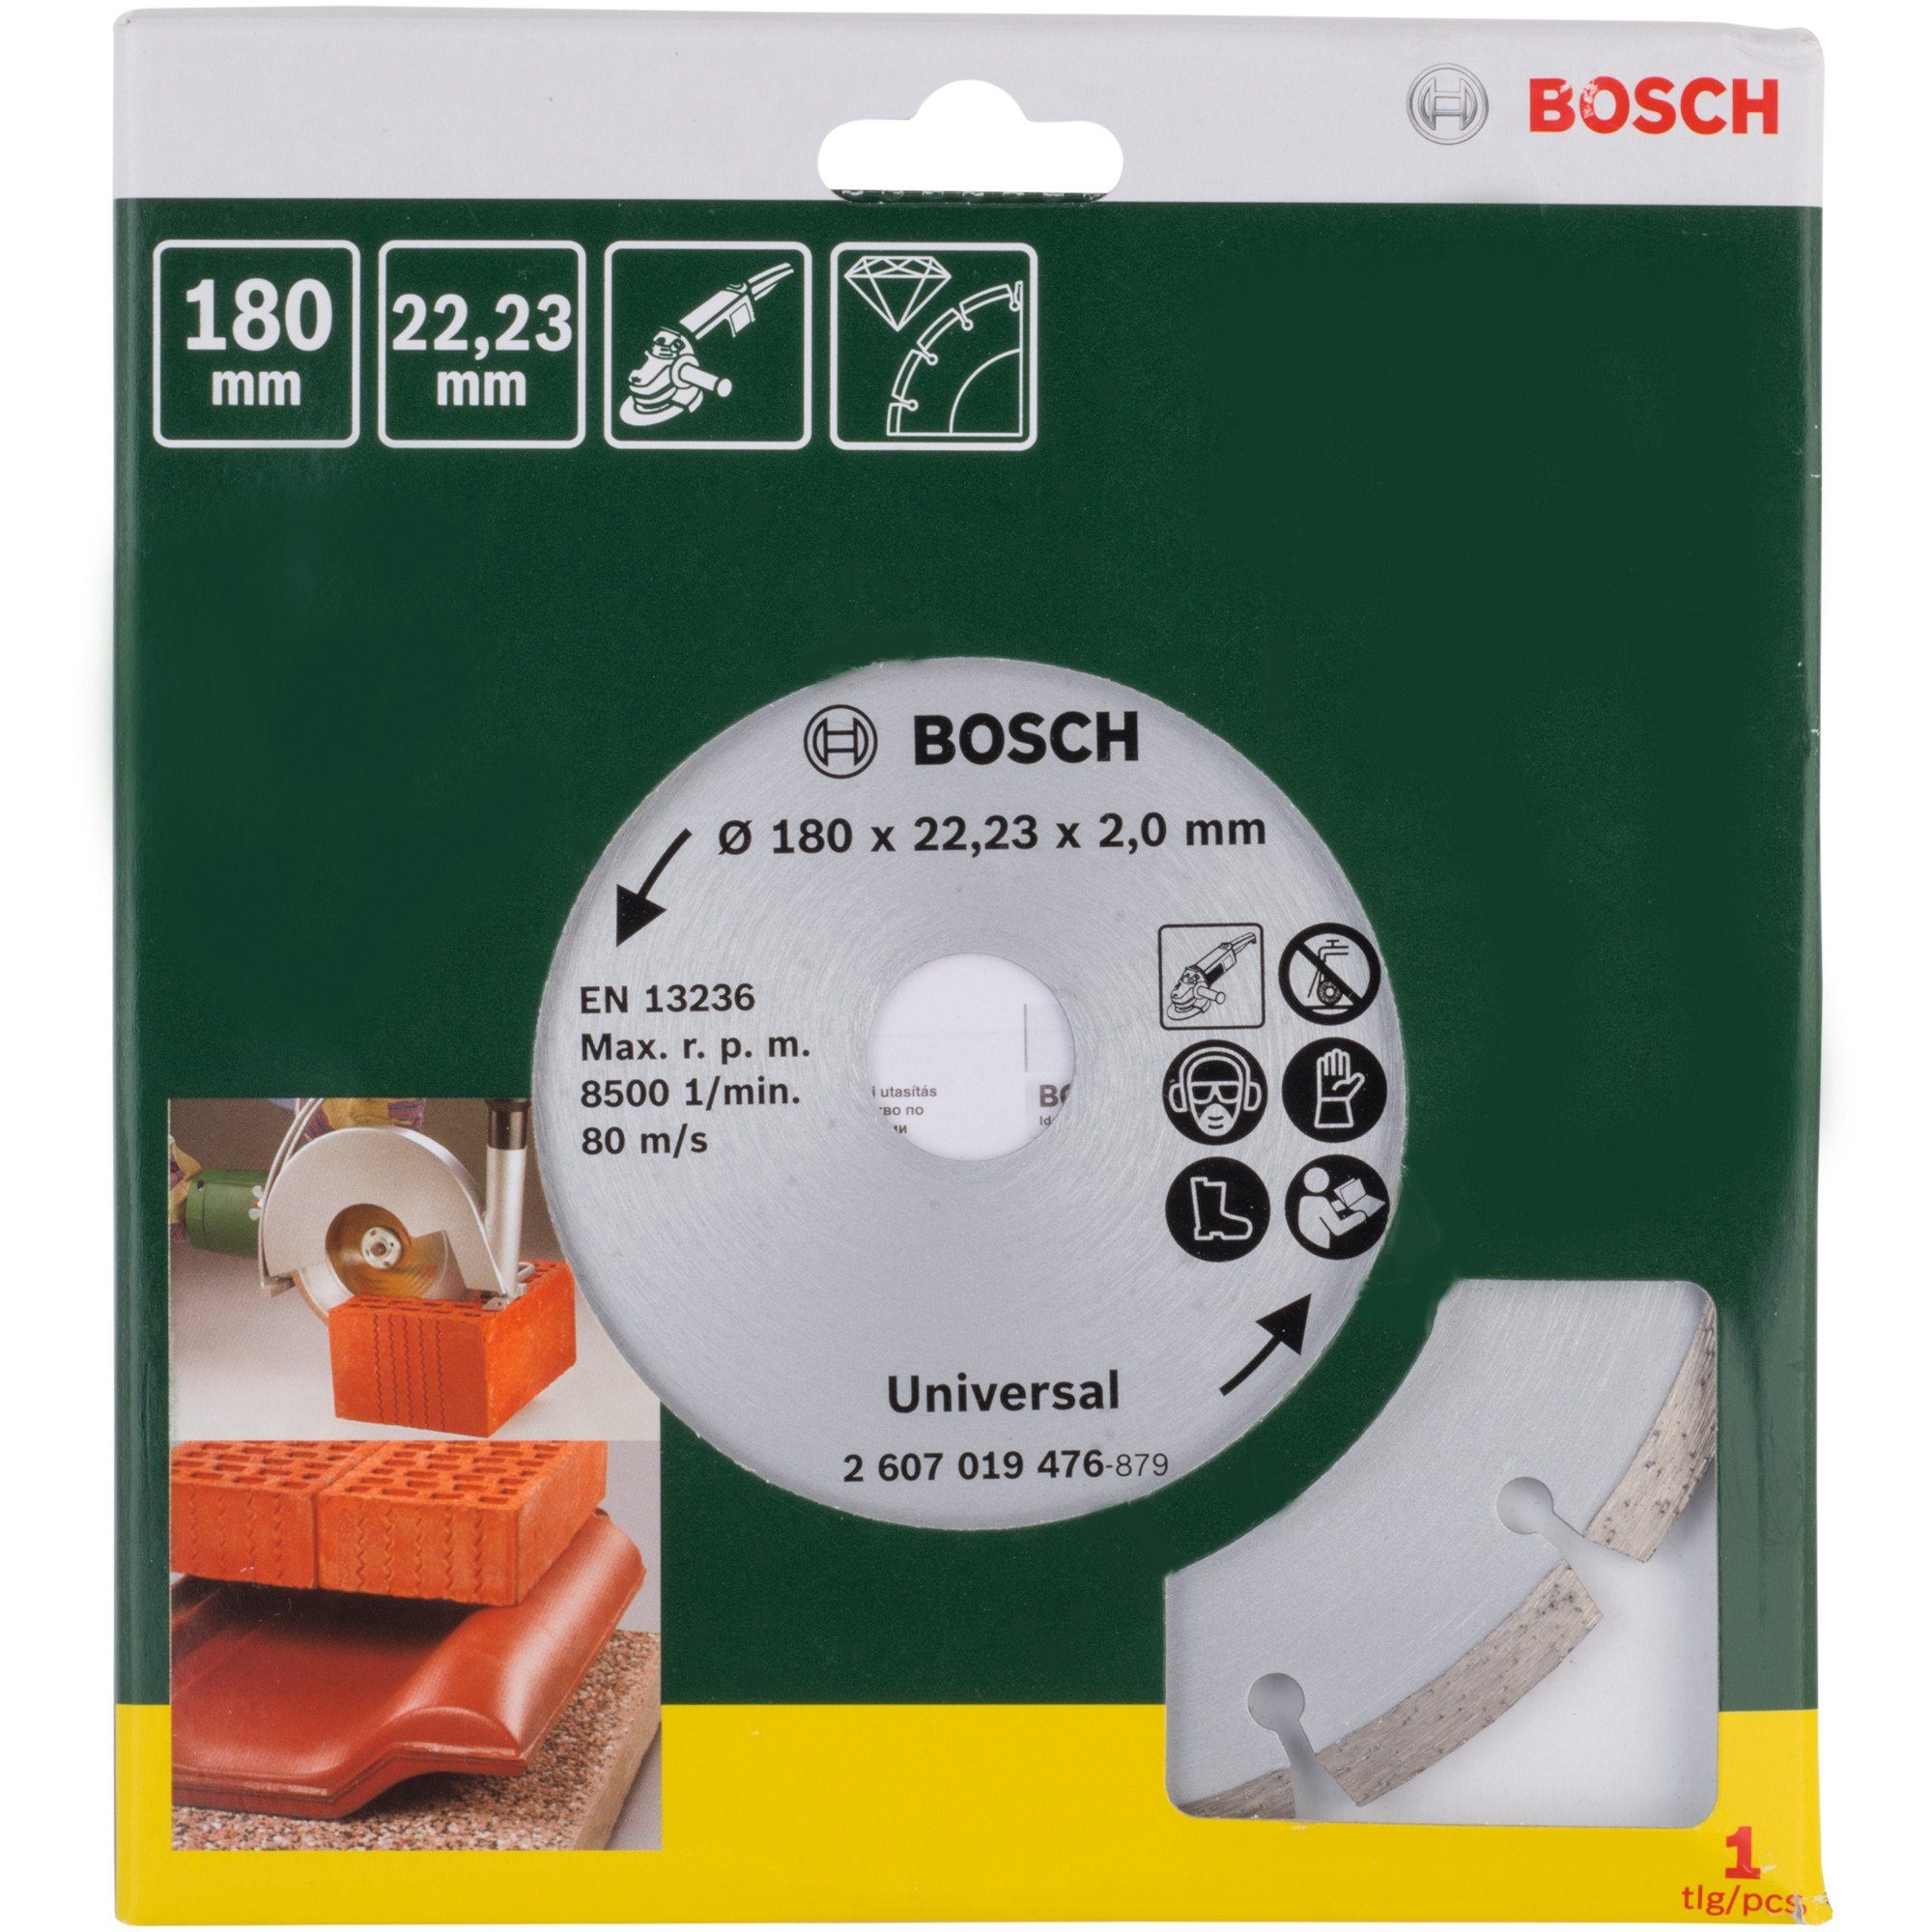 Bosch Accessories & Bosch BOSCH Heimwerken Trennscheibe Garten Diamanttrennscheibe